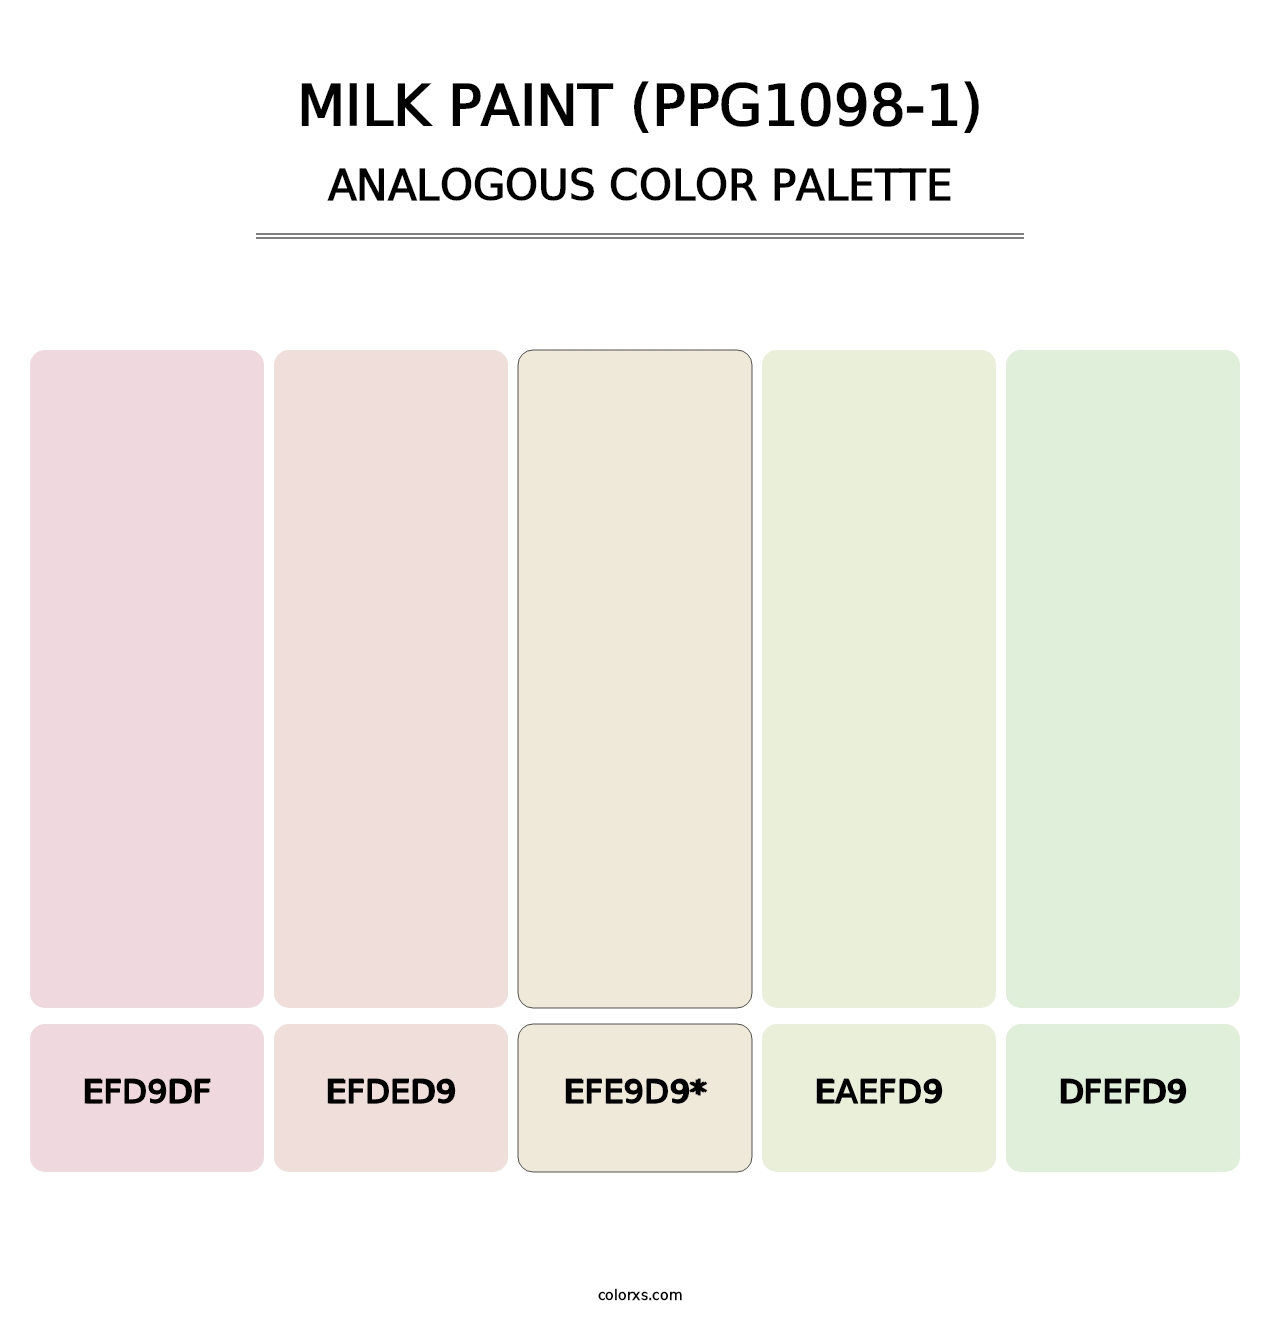 Milk Paint (PPG1098-1) - Analogous Color Palette